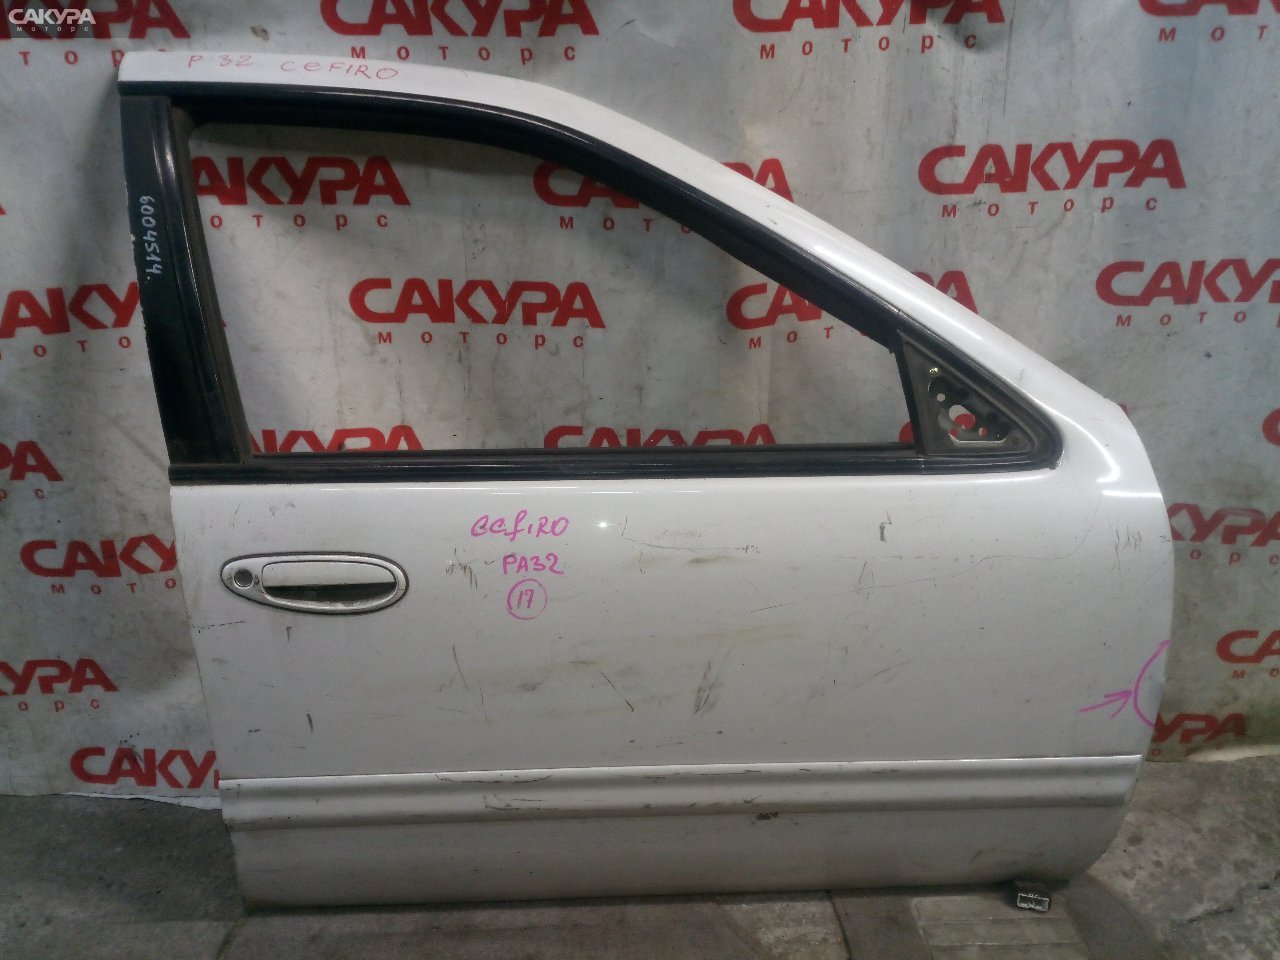 Дверь боковая передняя правая Nissan Cefiro A32: купить в Сакура Кемерово.